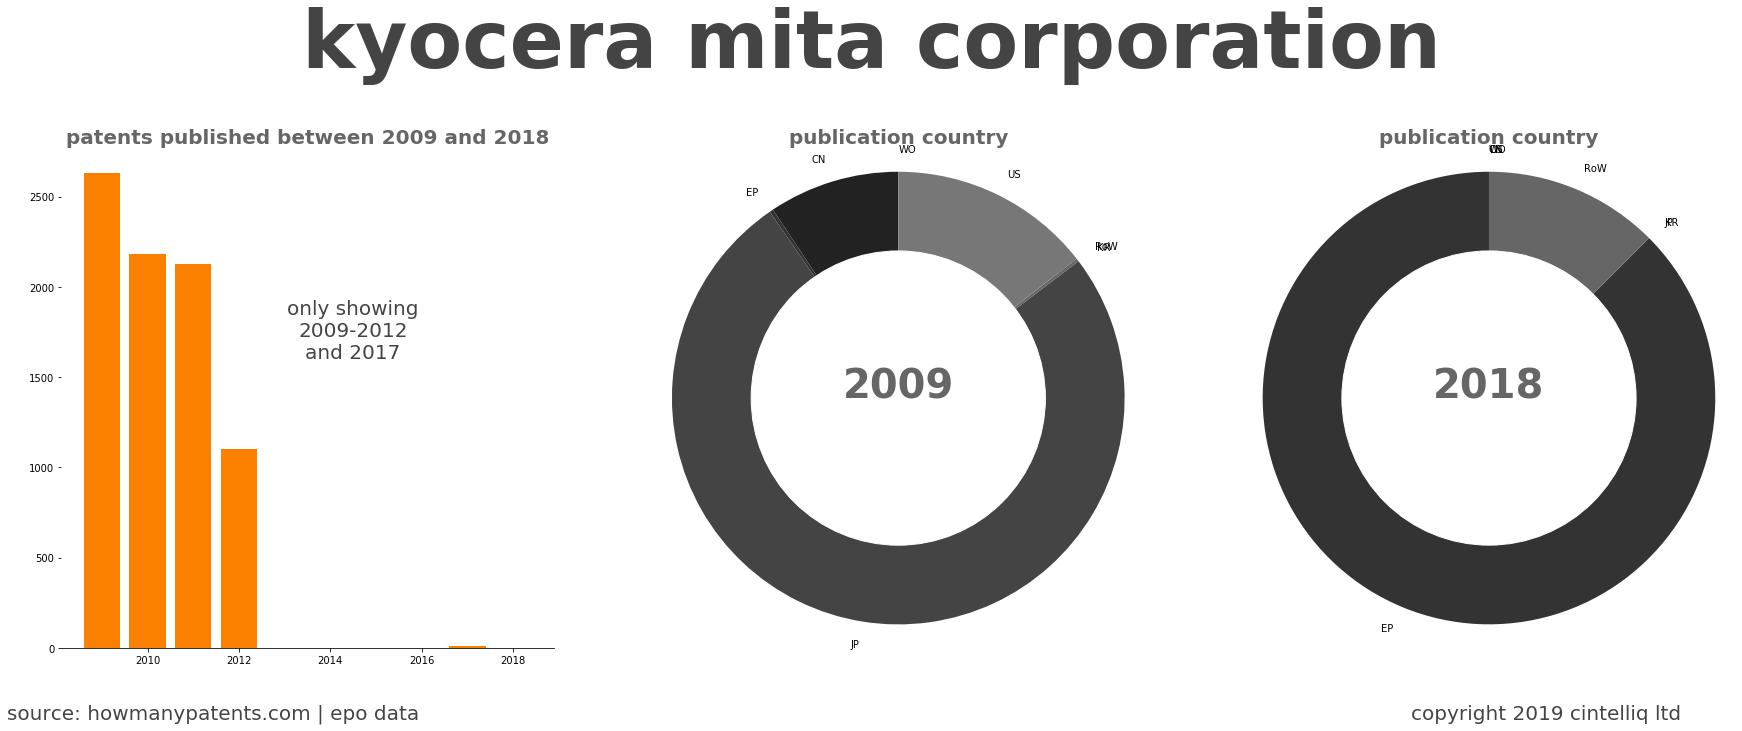 summary of patents for Kyocera Mita Corporation